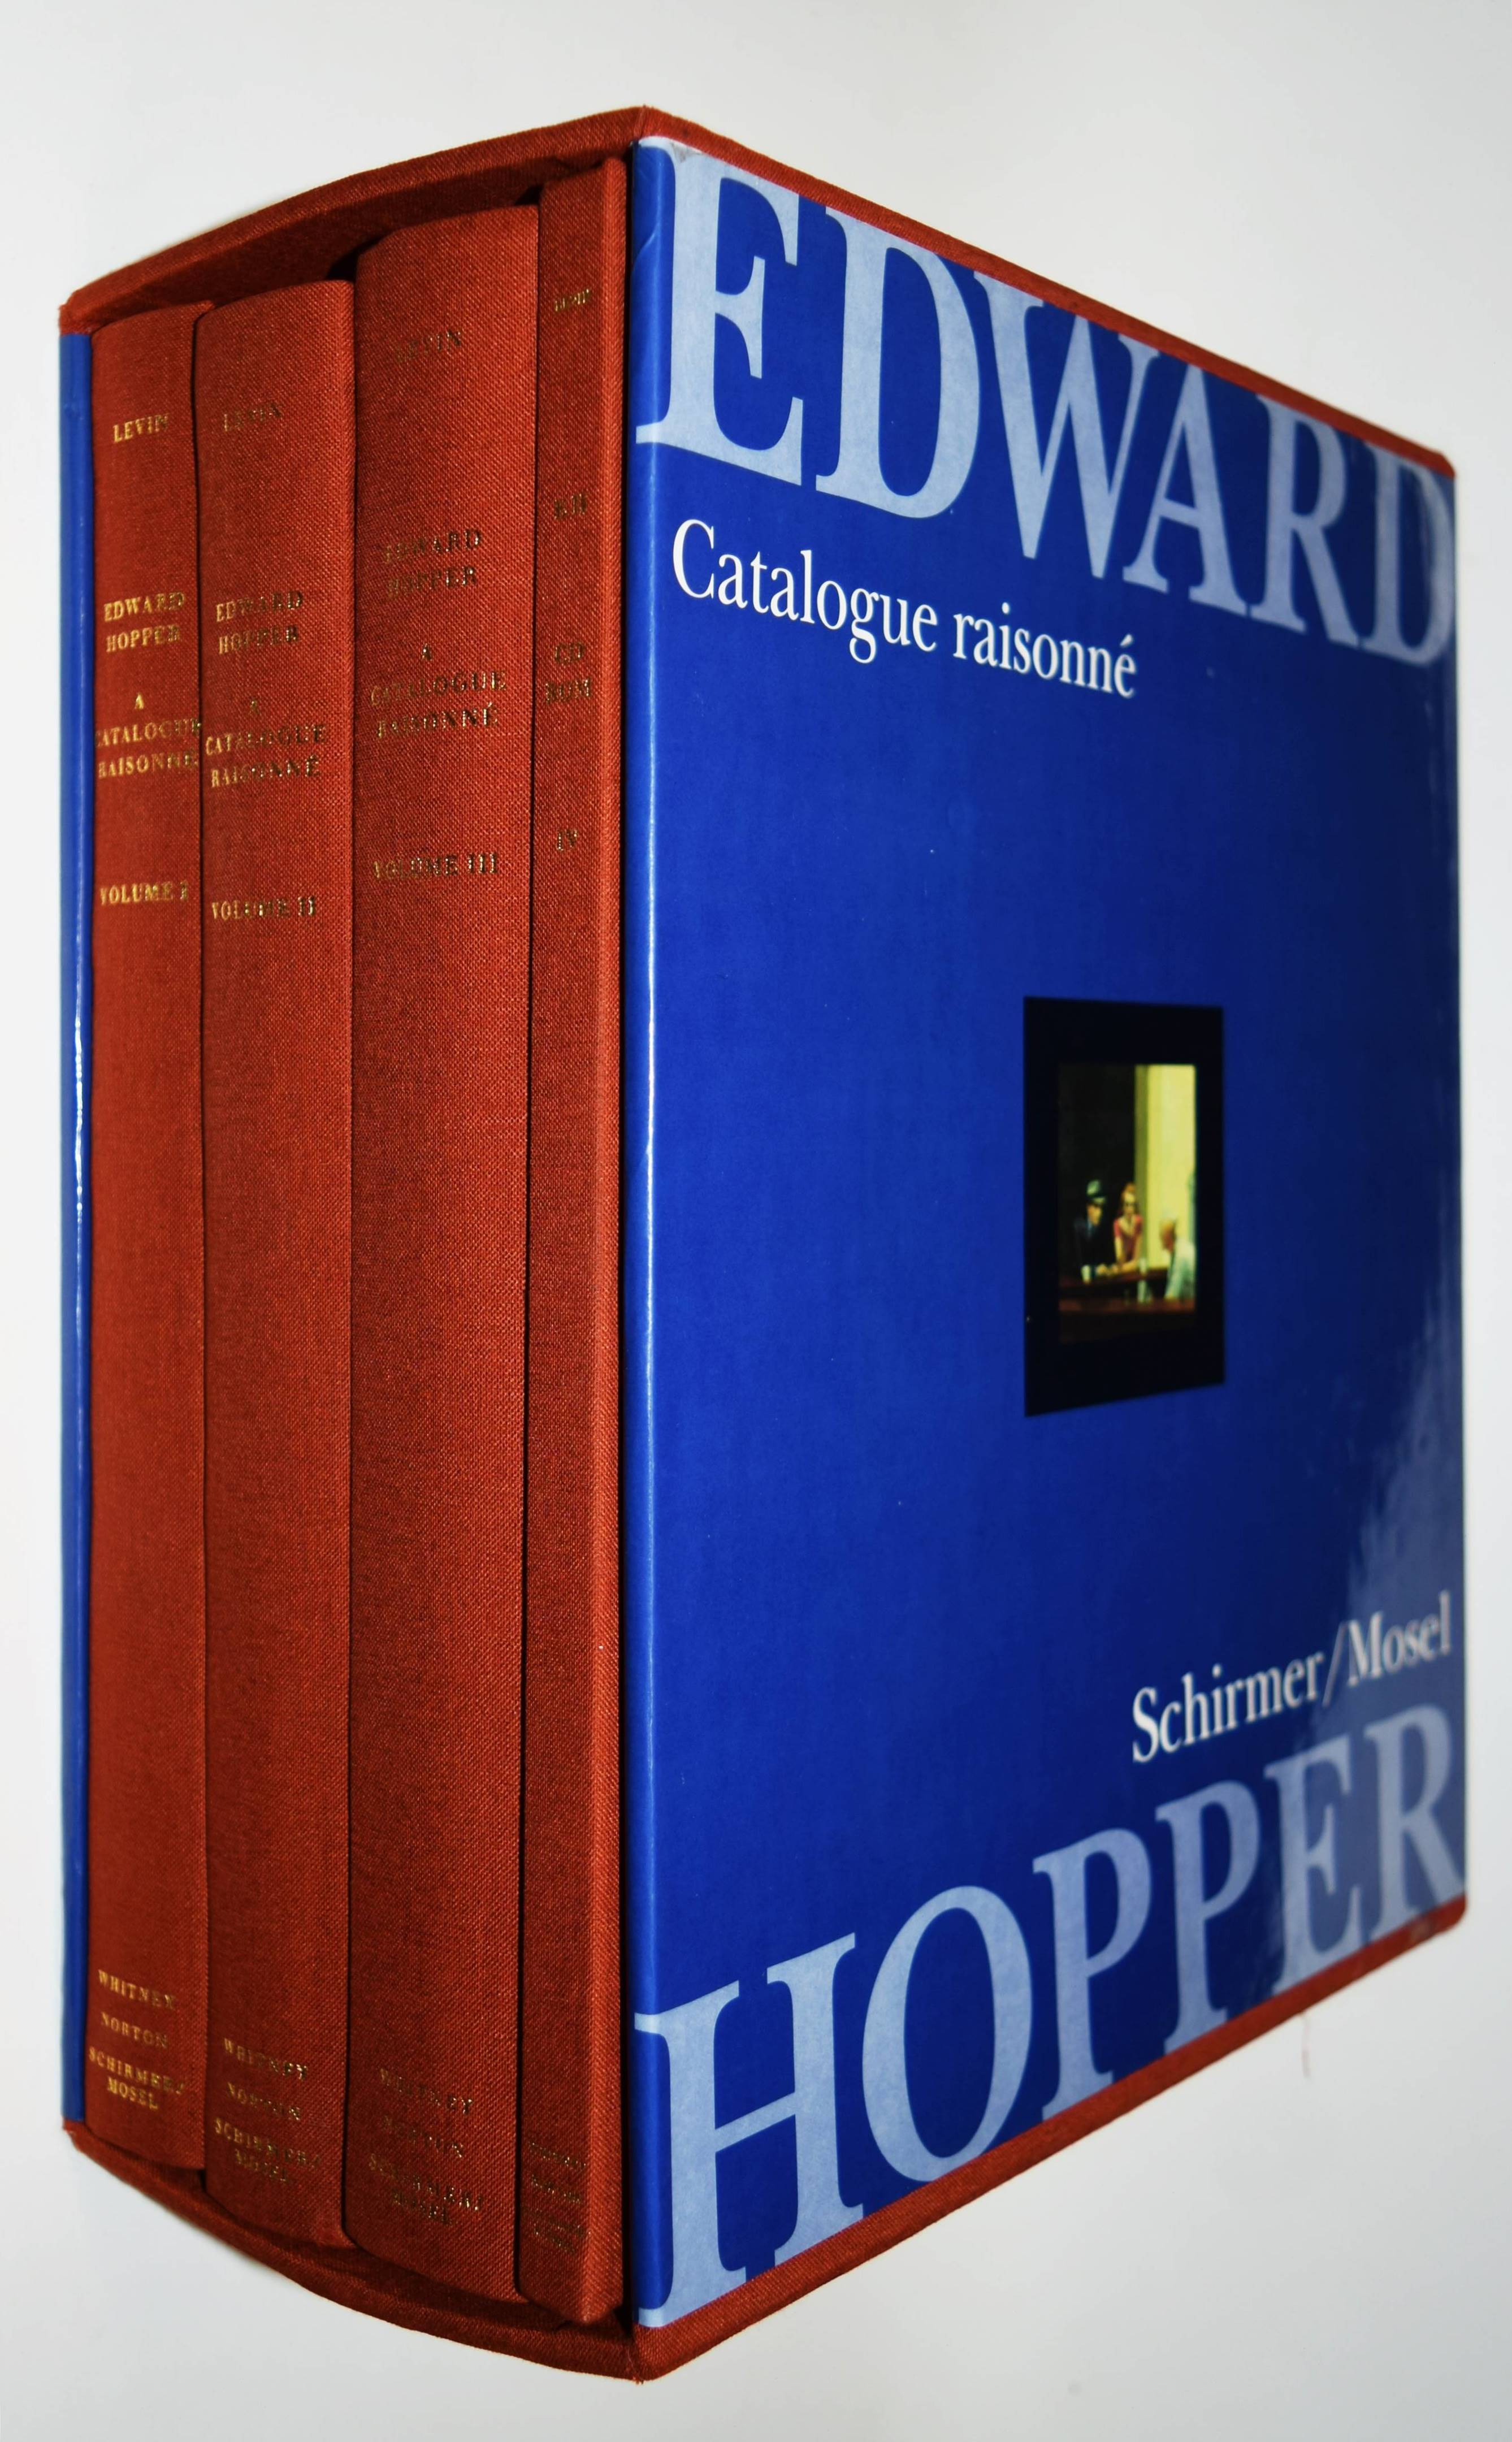 Edward Hopper. A catalogue raisonné. - Hopper - Levin, Gail.